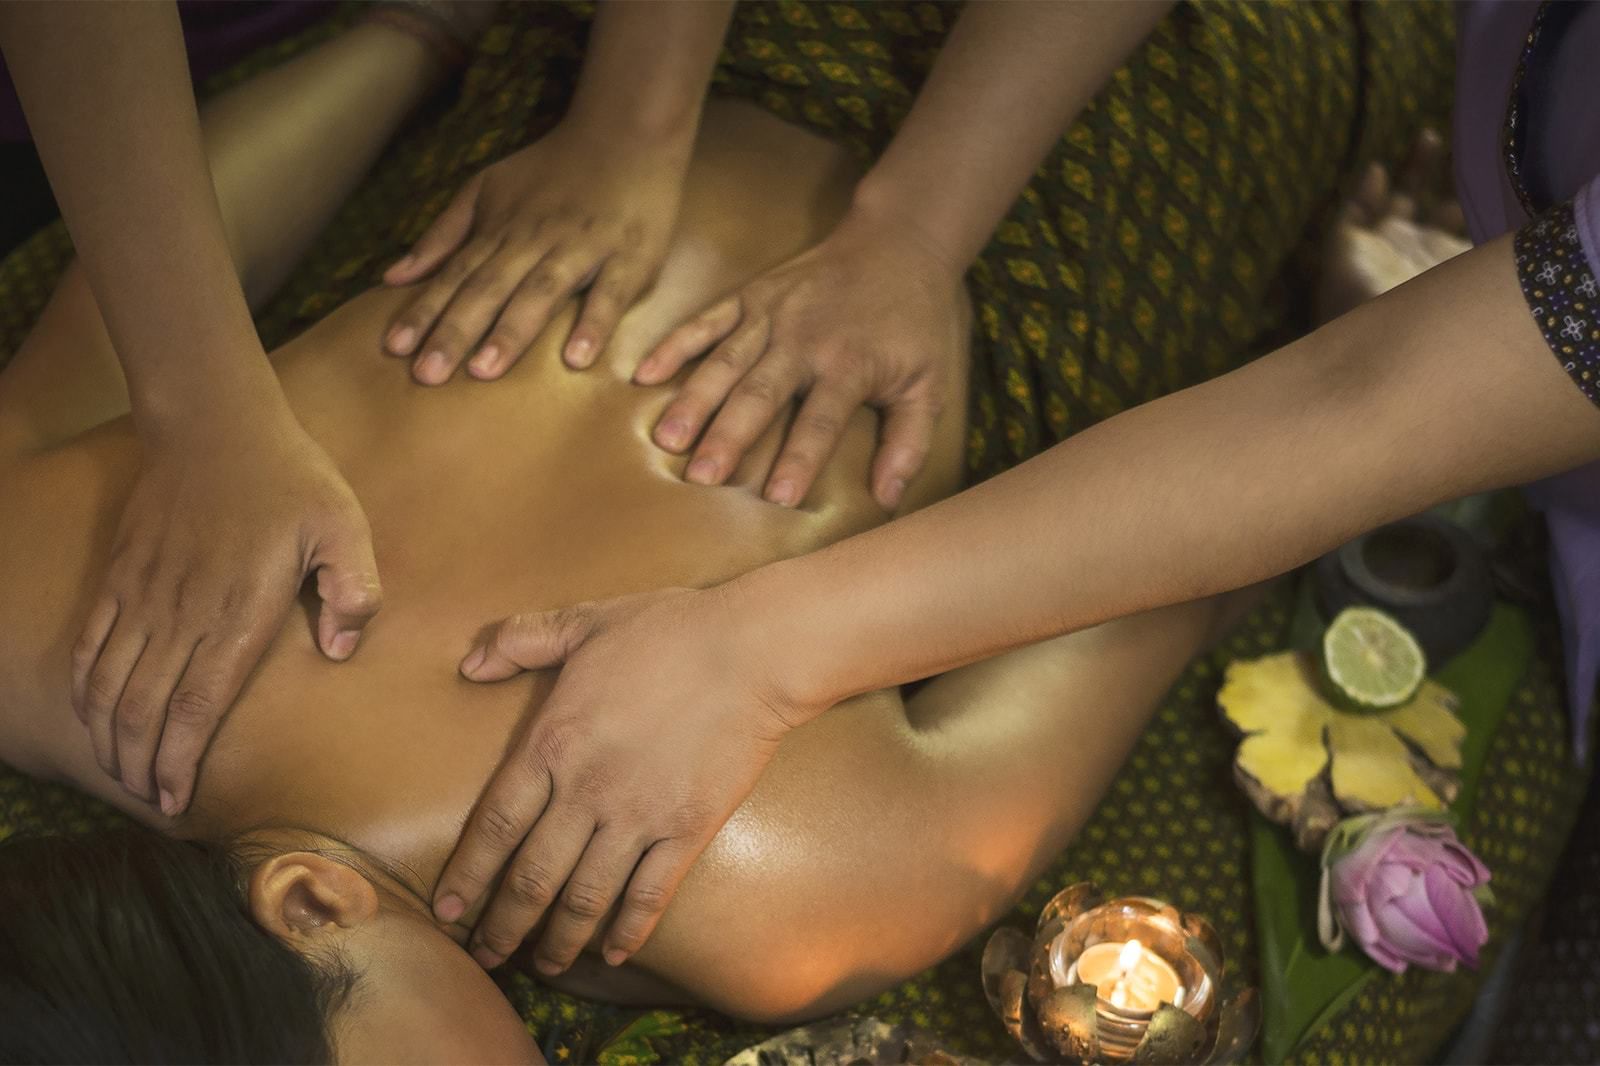 Тайский традиционный массаж в 4 руки